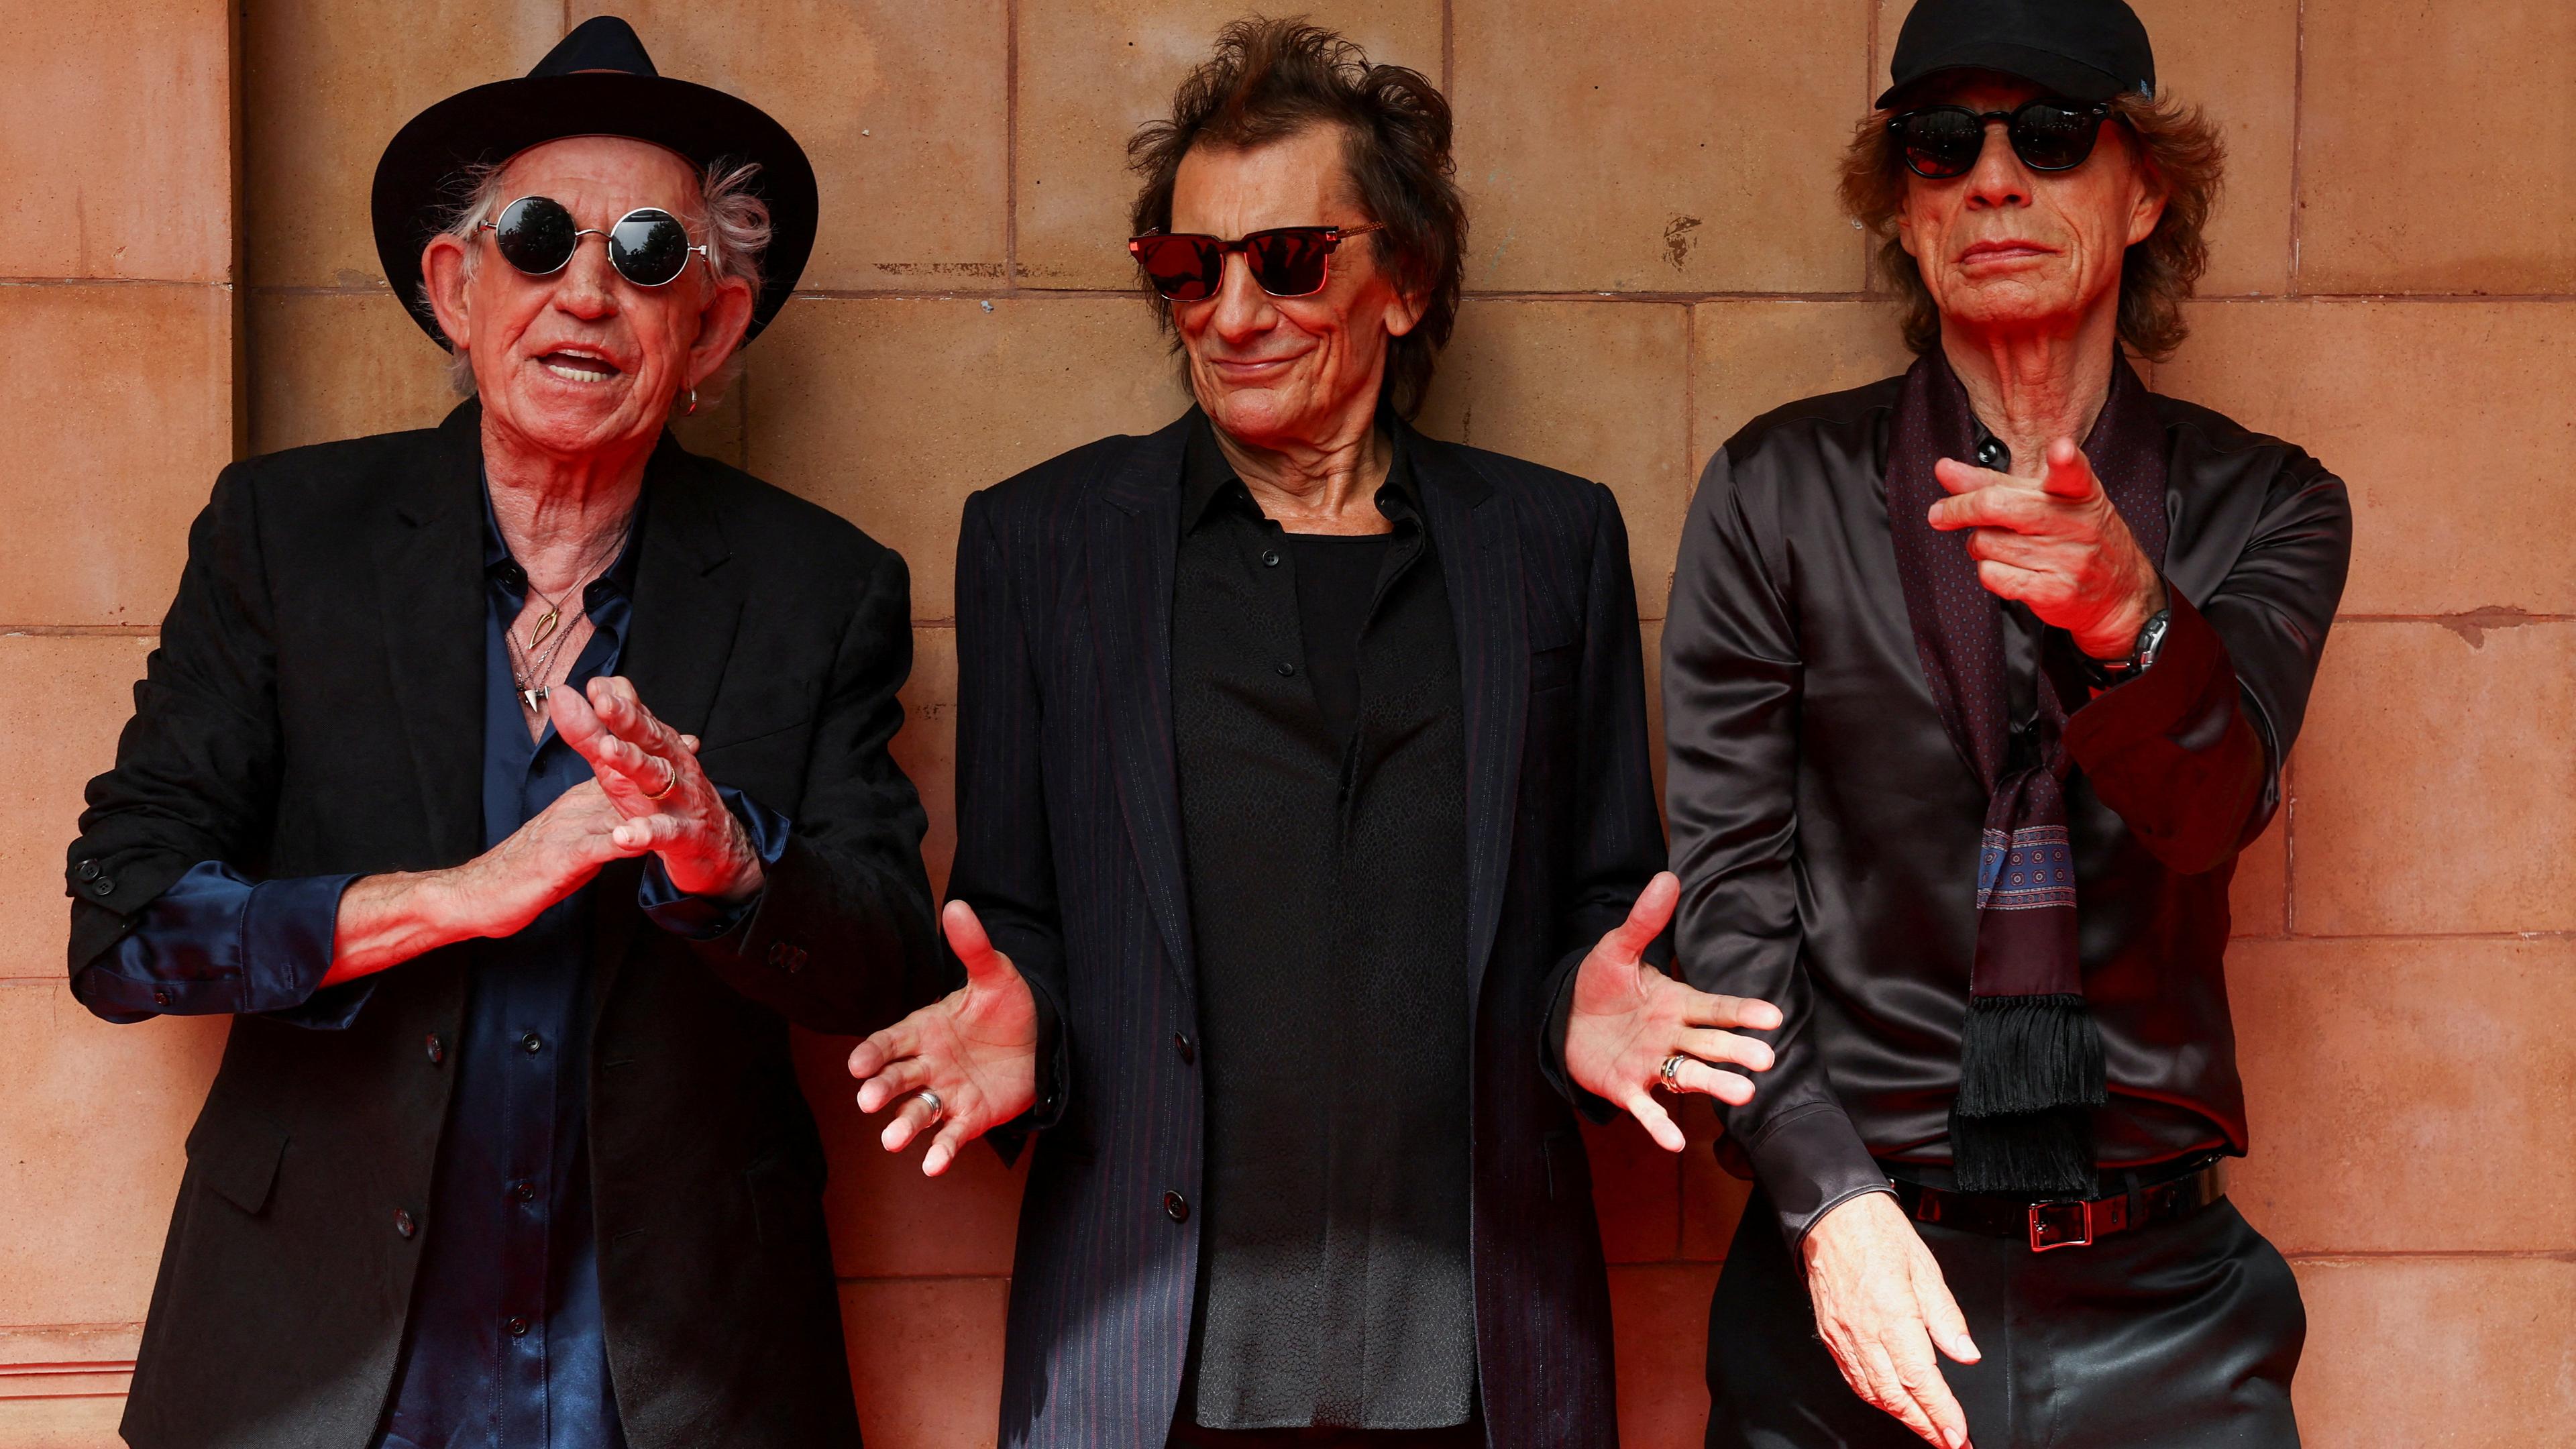 Die Bandmitglieder der Rolling Stones posieren anlässlich ihres kommenden Albums an einer Mauer.